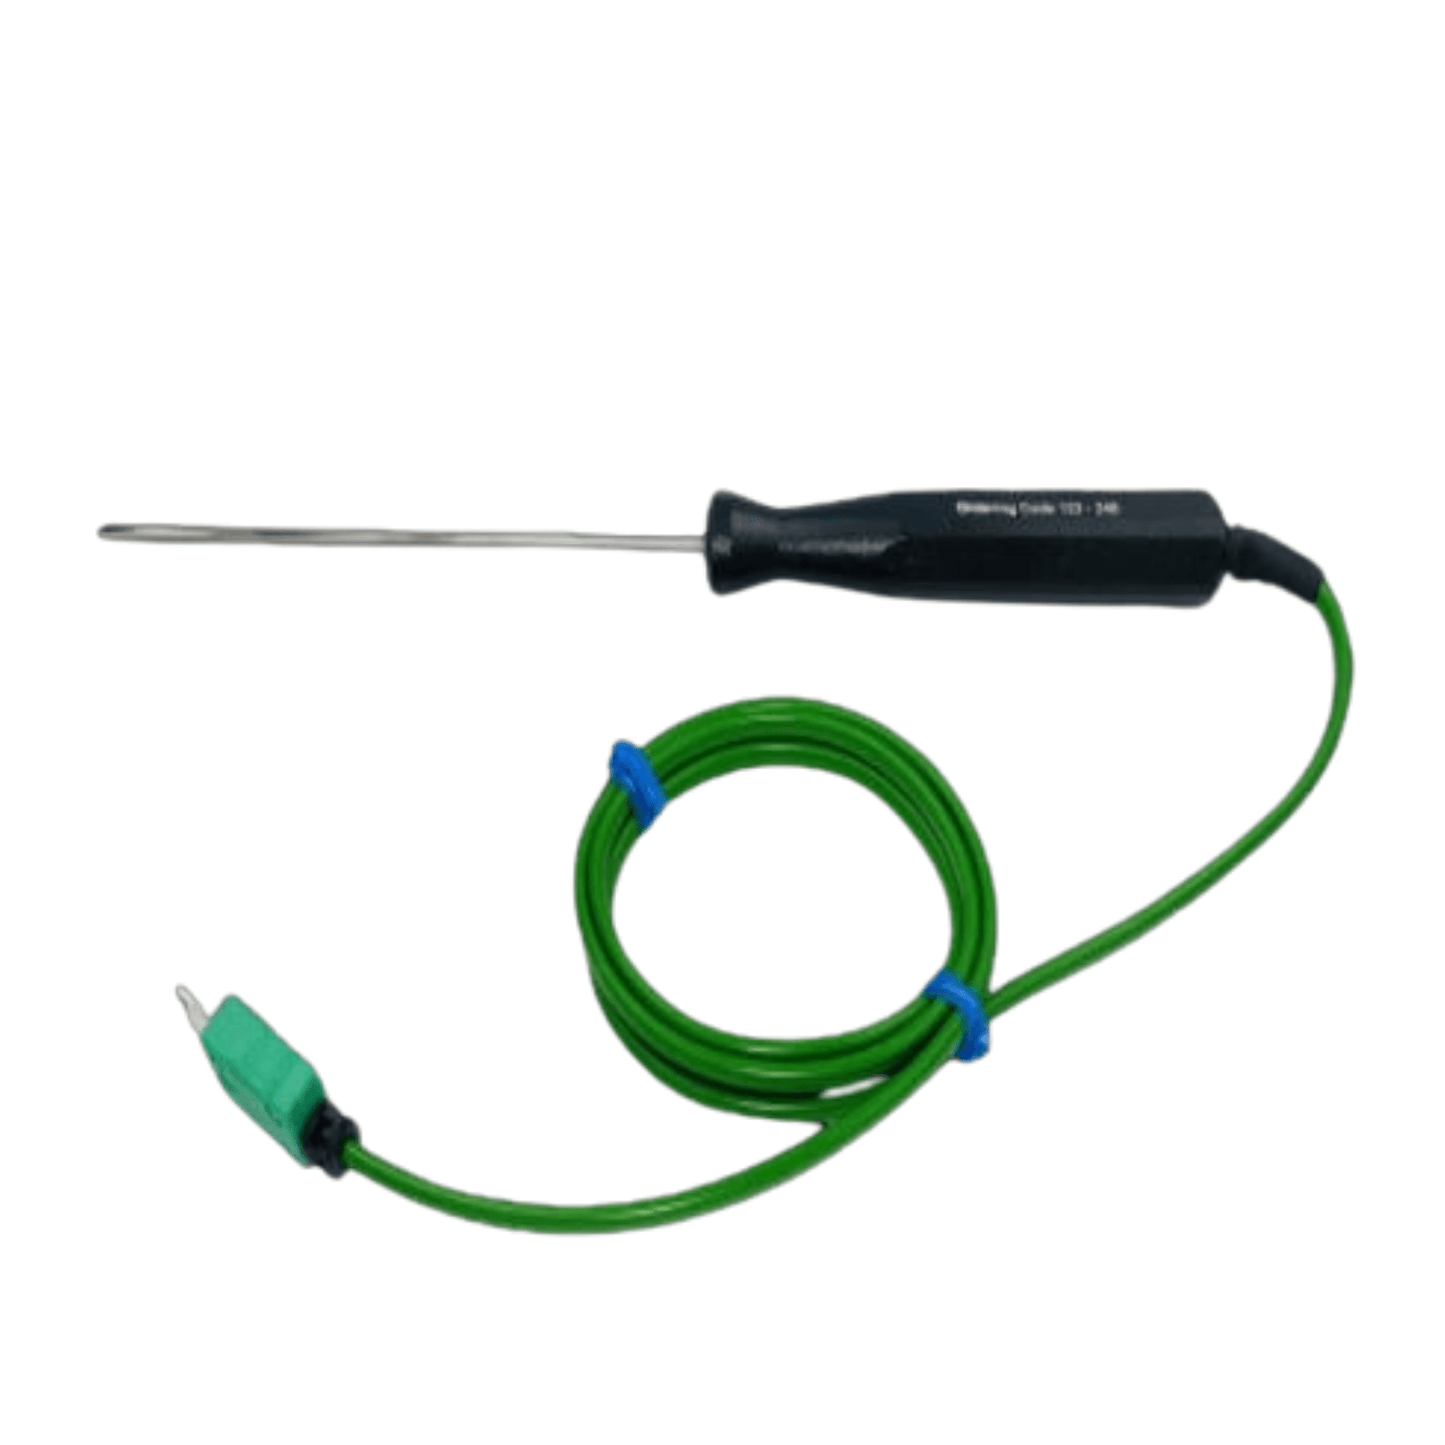 Un classeur de sonde de température vert auquel est attaché un fil mesure la température avec précision.